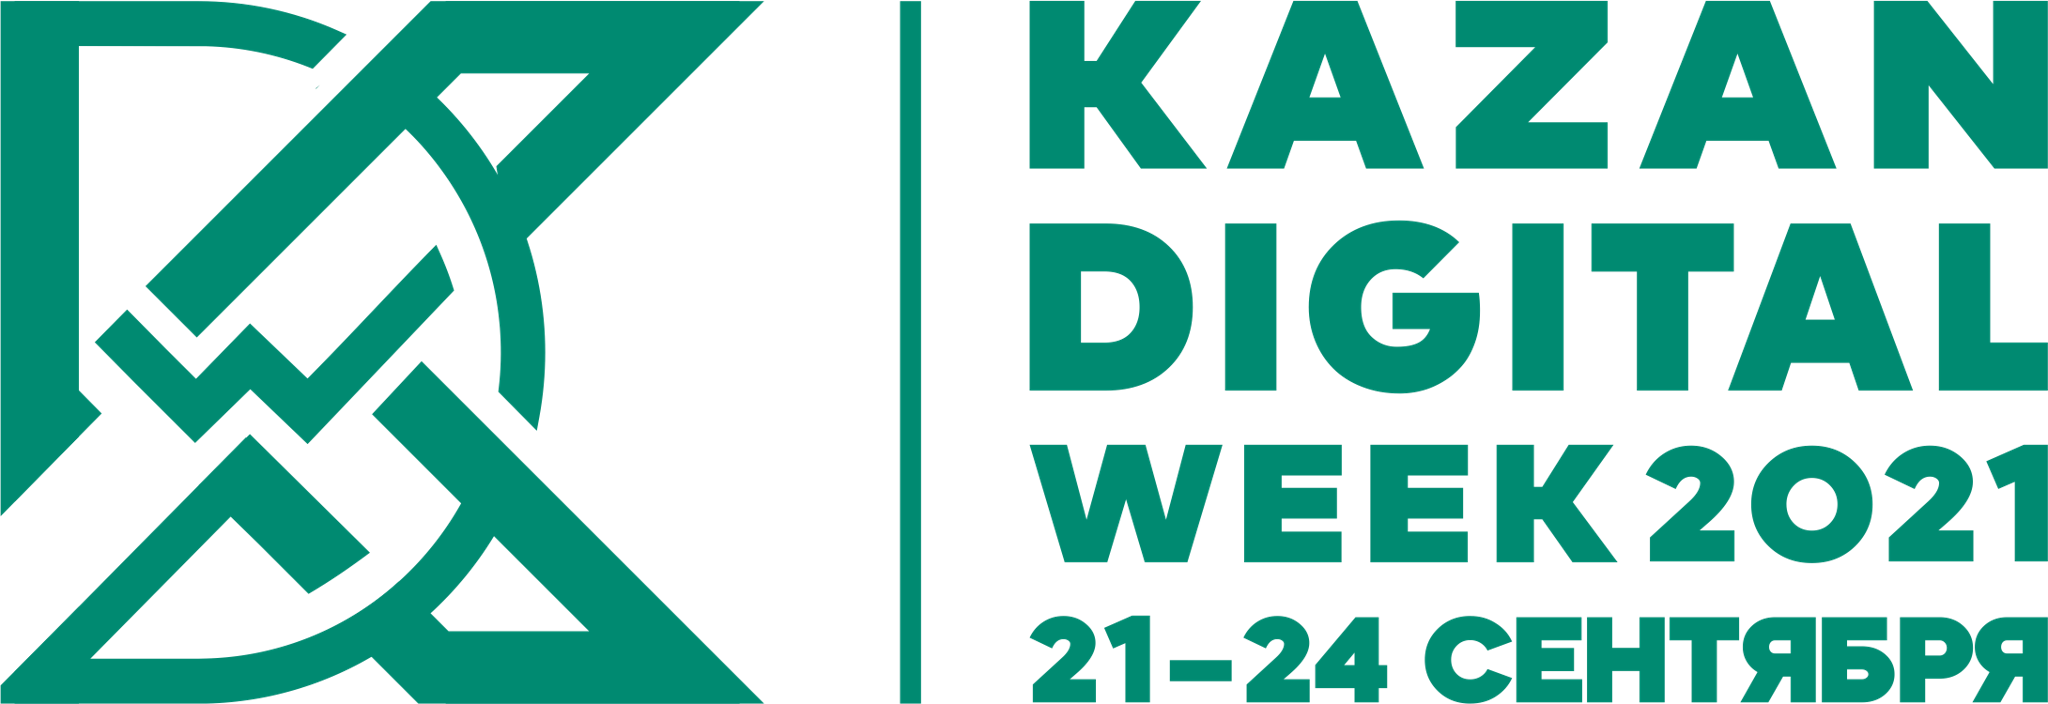 Kazan Digital Week